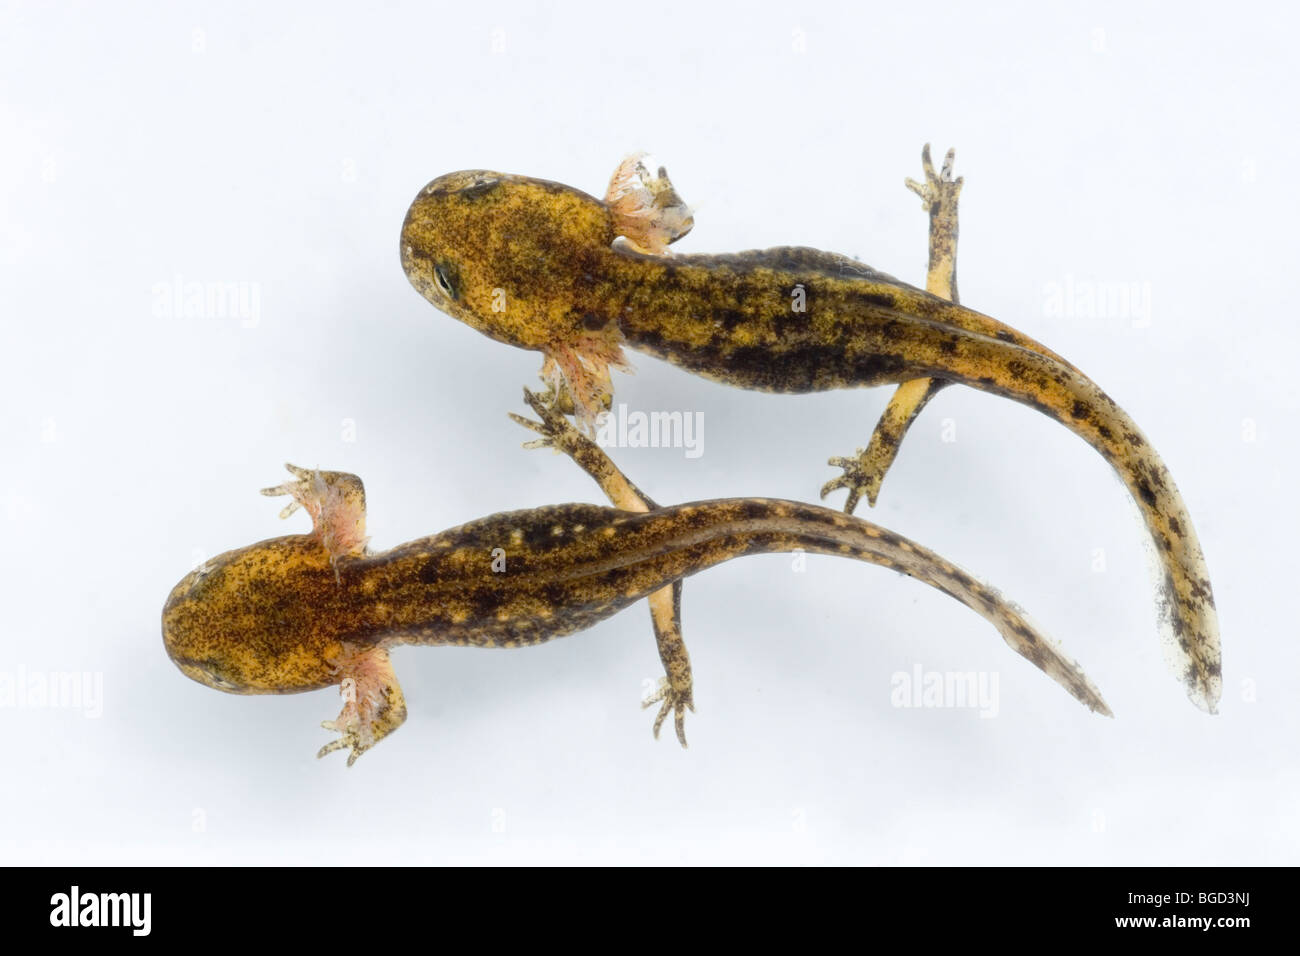 European Fire Salamander (Salamandra salamandra). Two adpoles or larvae, in aquatic stage of development. Stock Photo